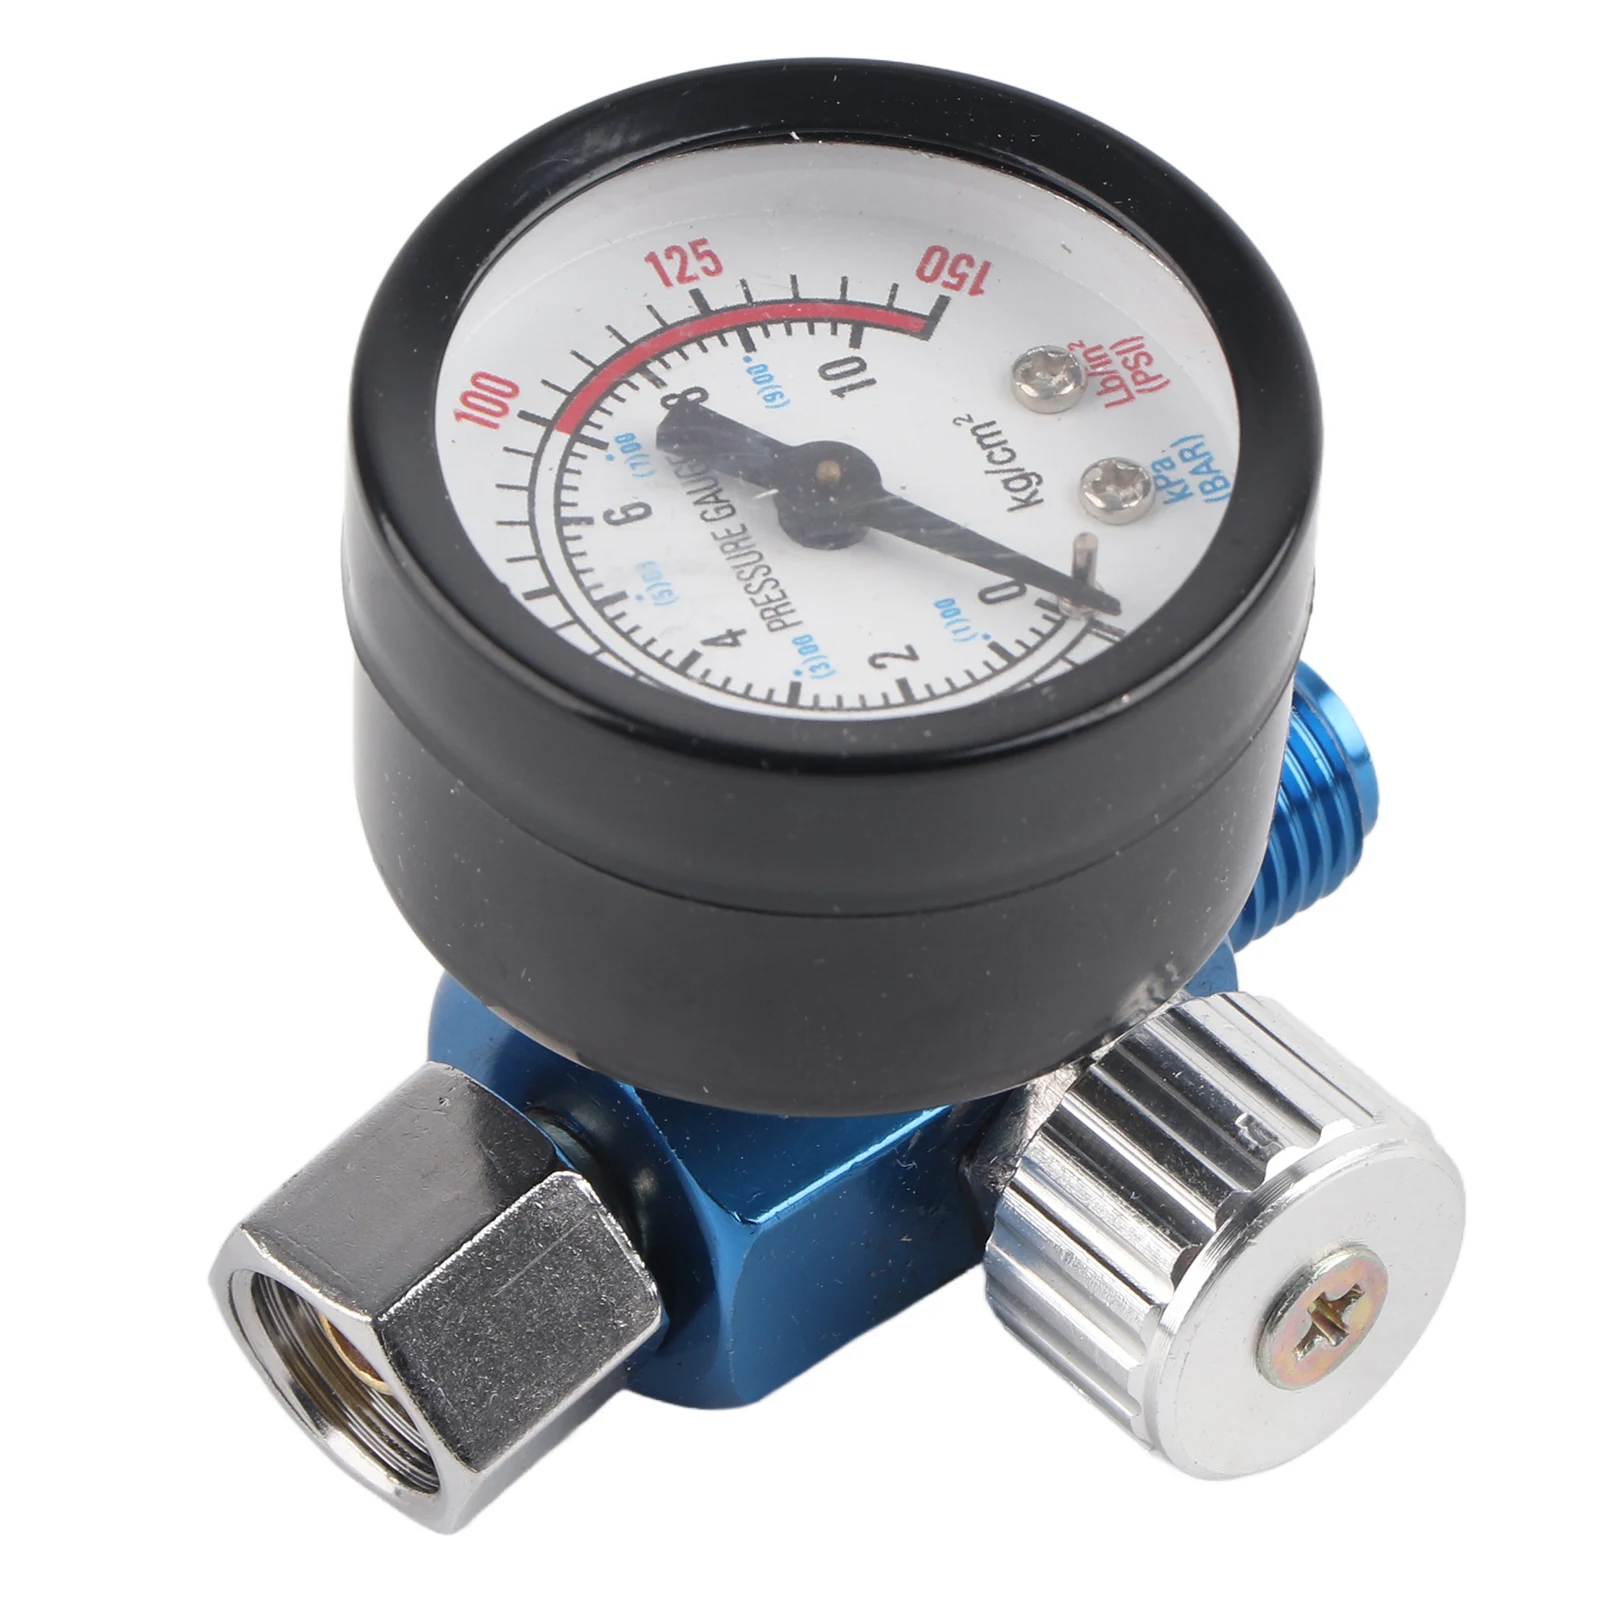 

Регулятор давления воздуха с распылителем краски 1/4 дюйма, манометр, пневматический инструмент, аксессуары